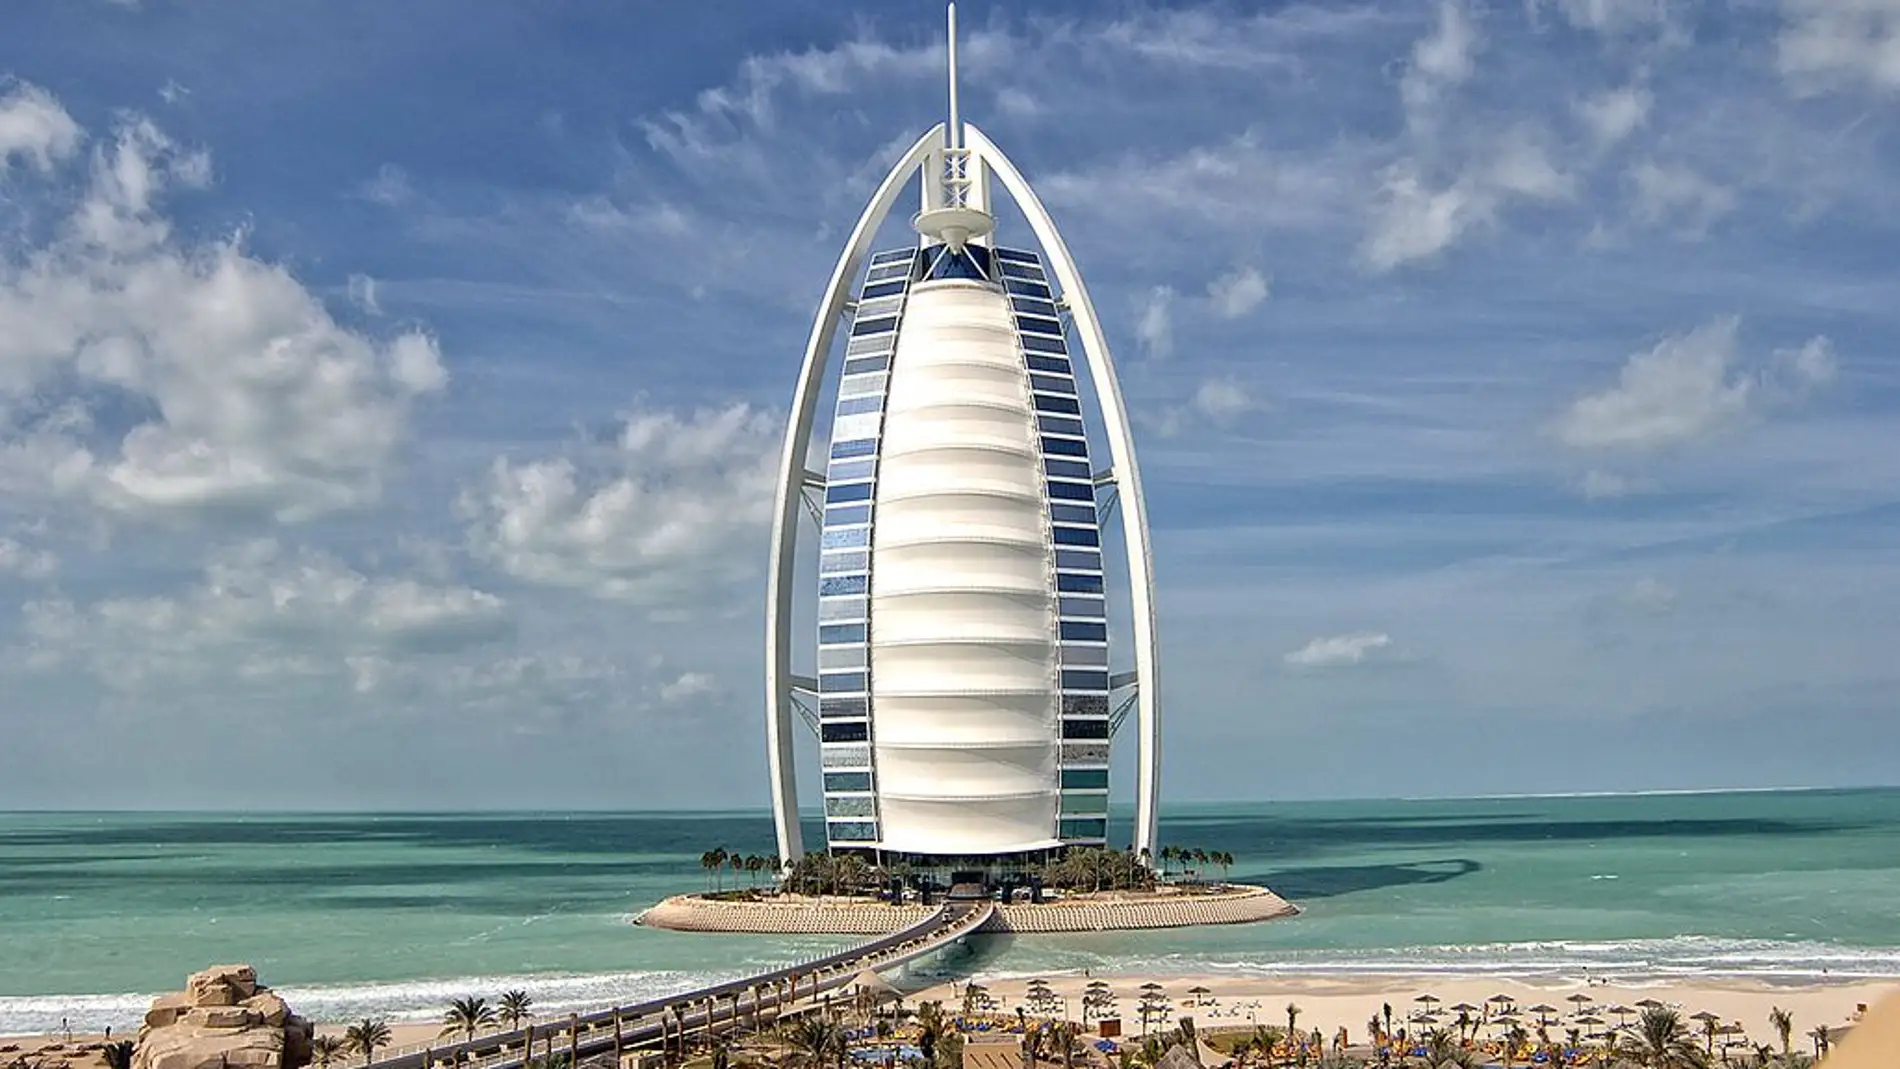 Burj al Arab, uno de los hoteles más altos de Dubái (EAU)